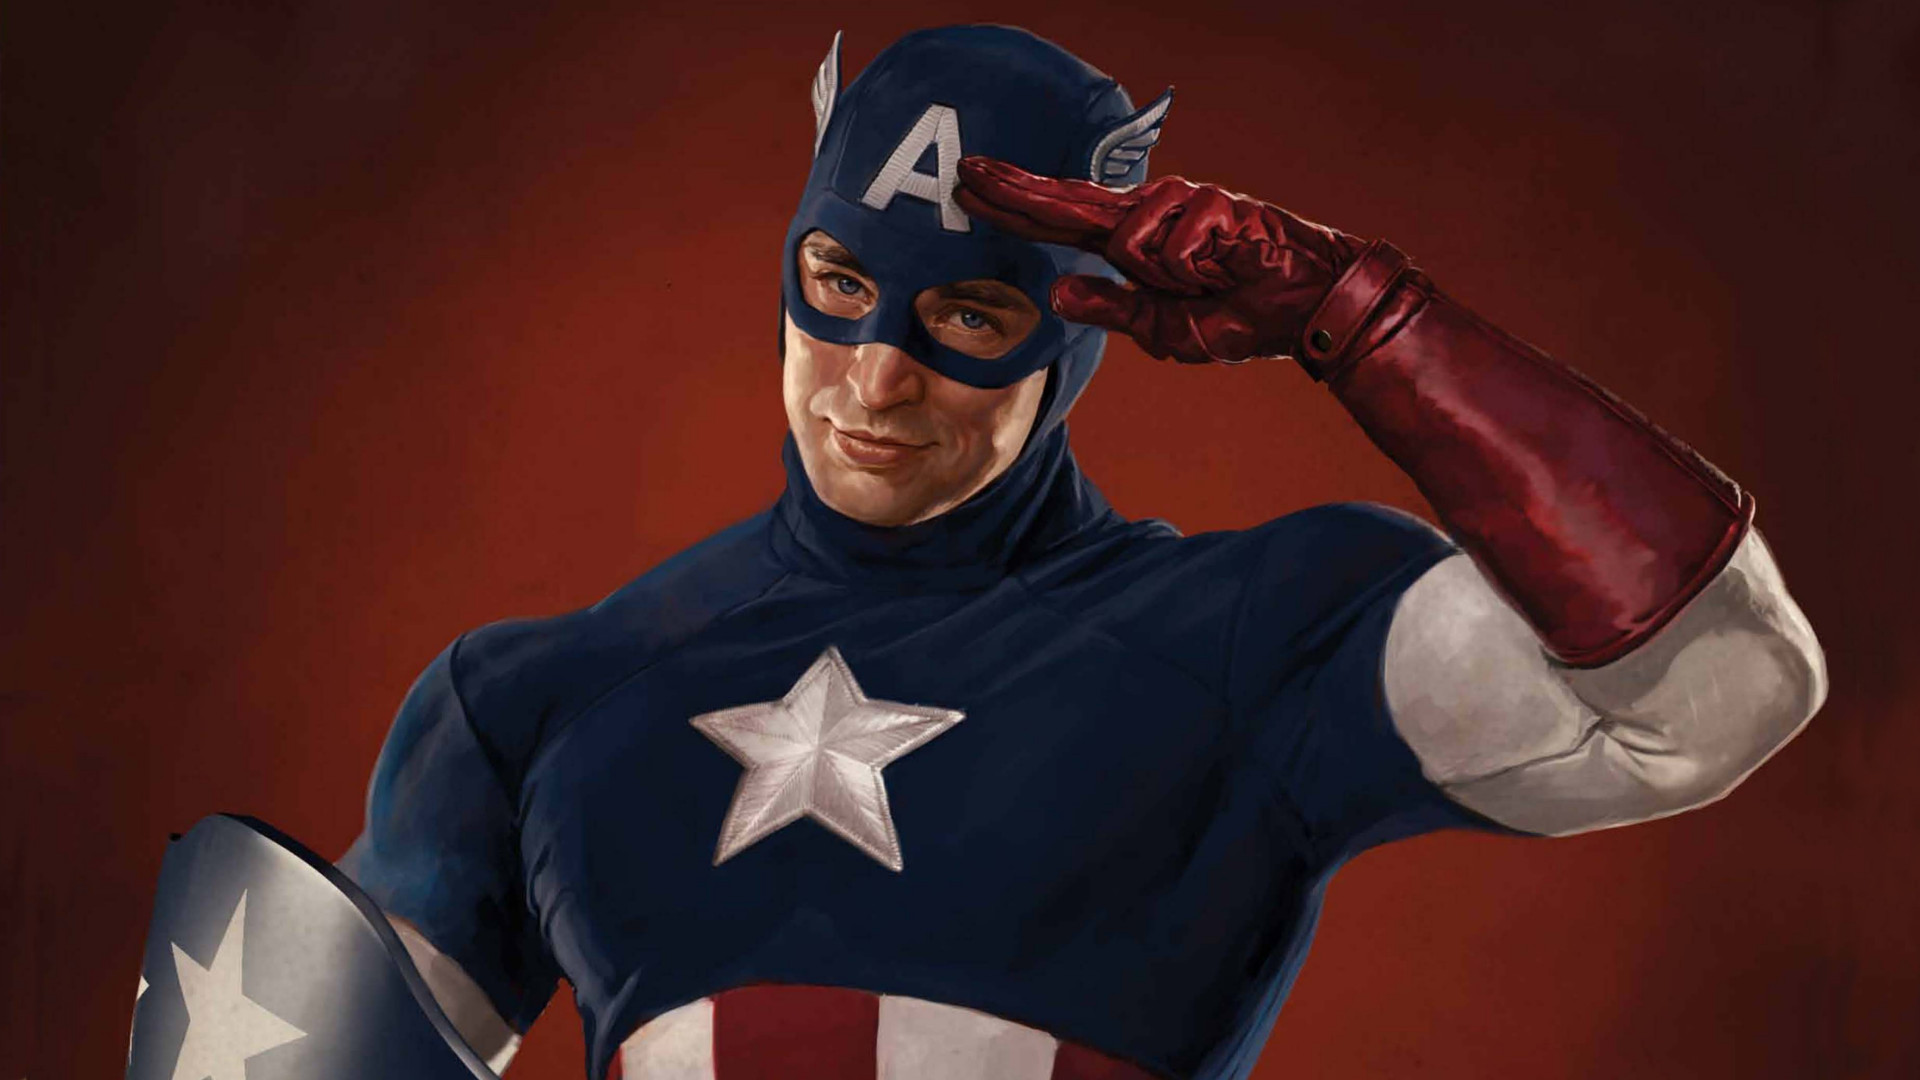 Descarga gratuita de fondo de pantalla para móvil de Capitán América: El Primer Vengador, Capitan América, Películas.